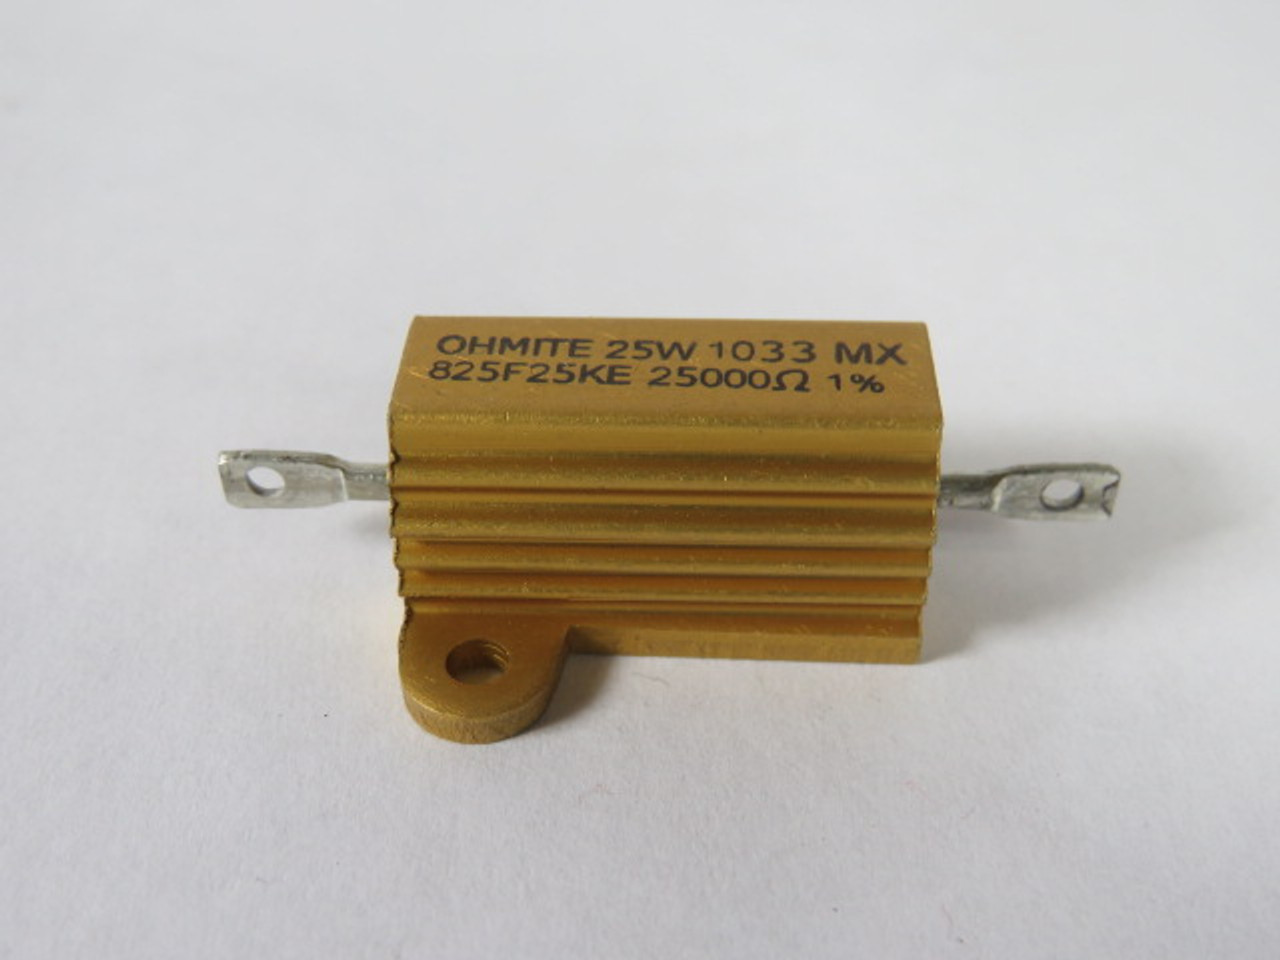 Ohmite 825F25KE Wirewound Resistor 25W 25Kohms 1% ! NEW !